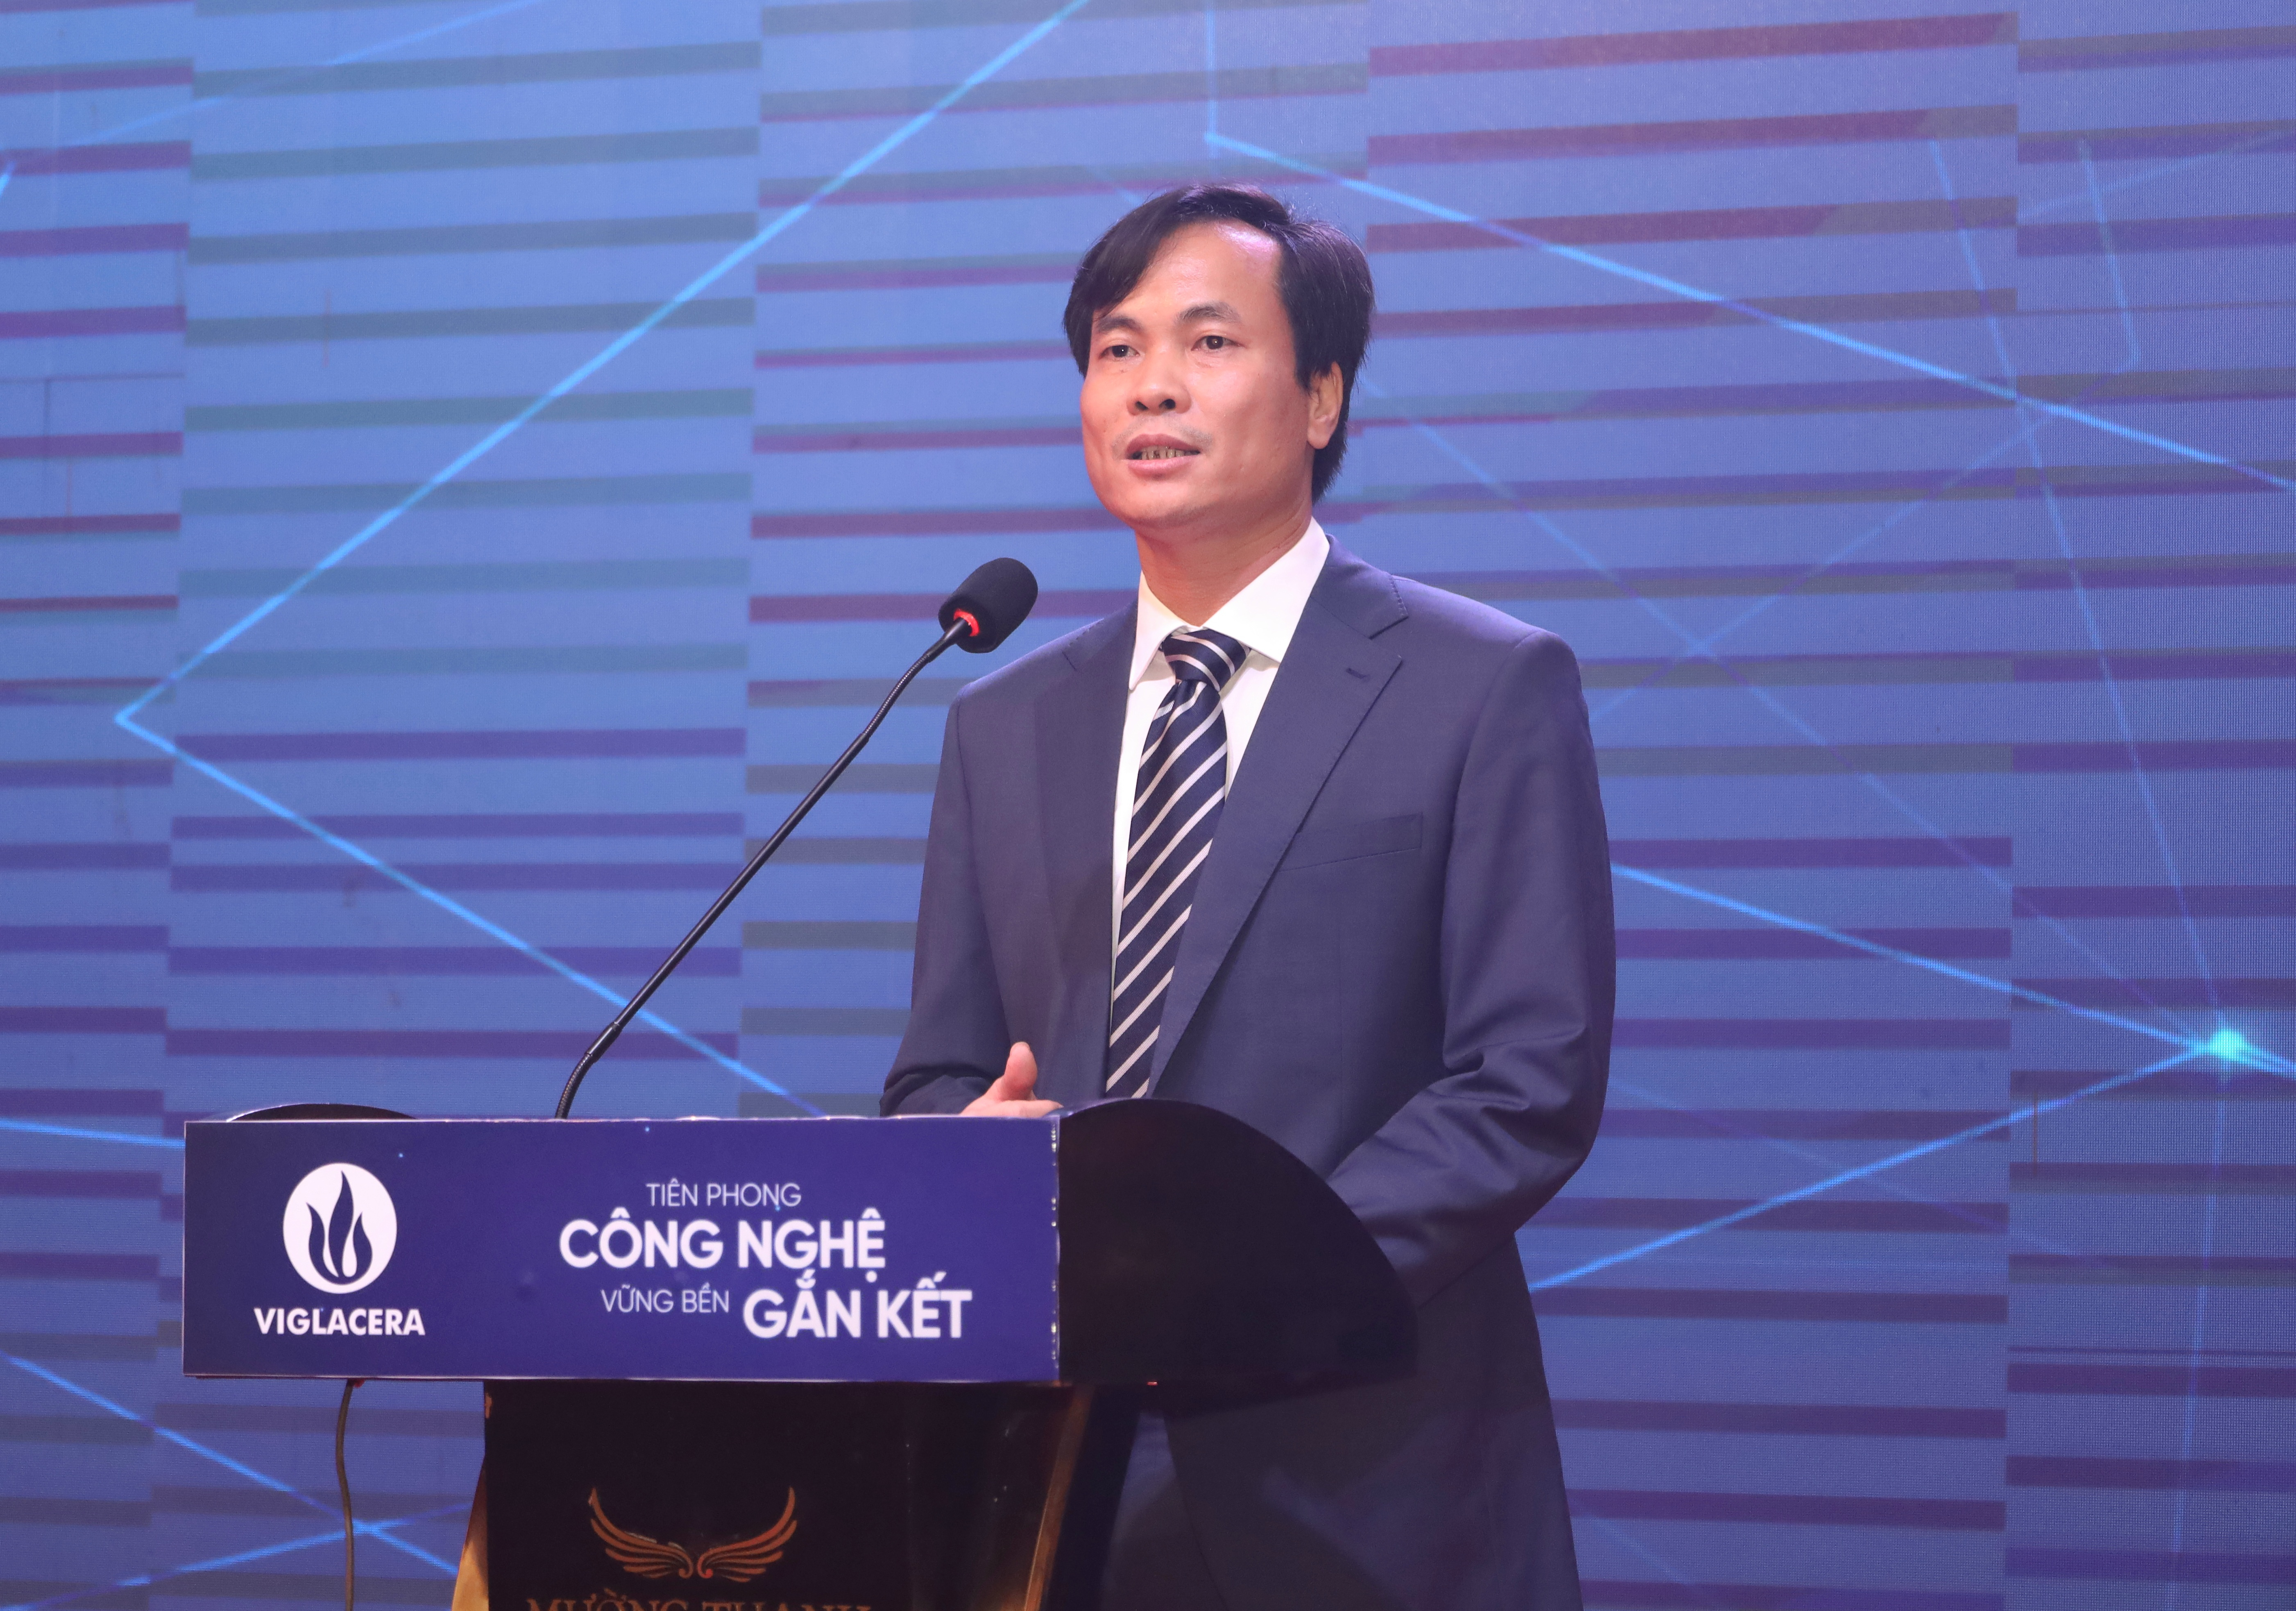 Ông Nguyễn Việt Cường - Phó Tổng giám đốc Công ty CPTM Viglacera phát biểu tại hội nghị.